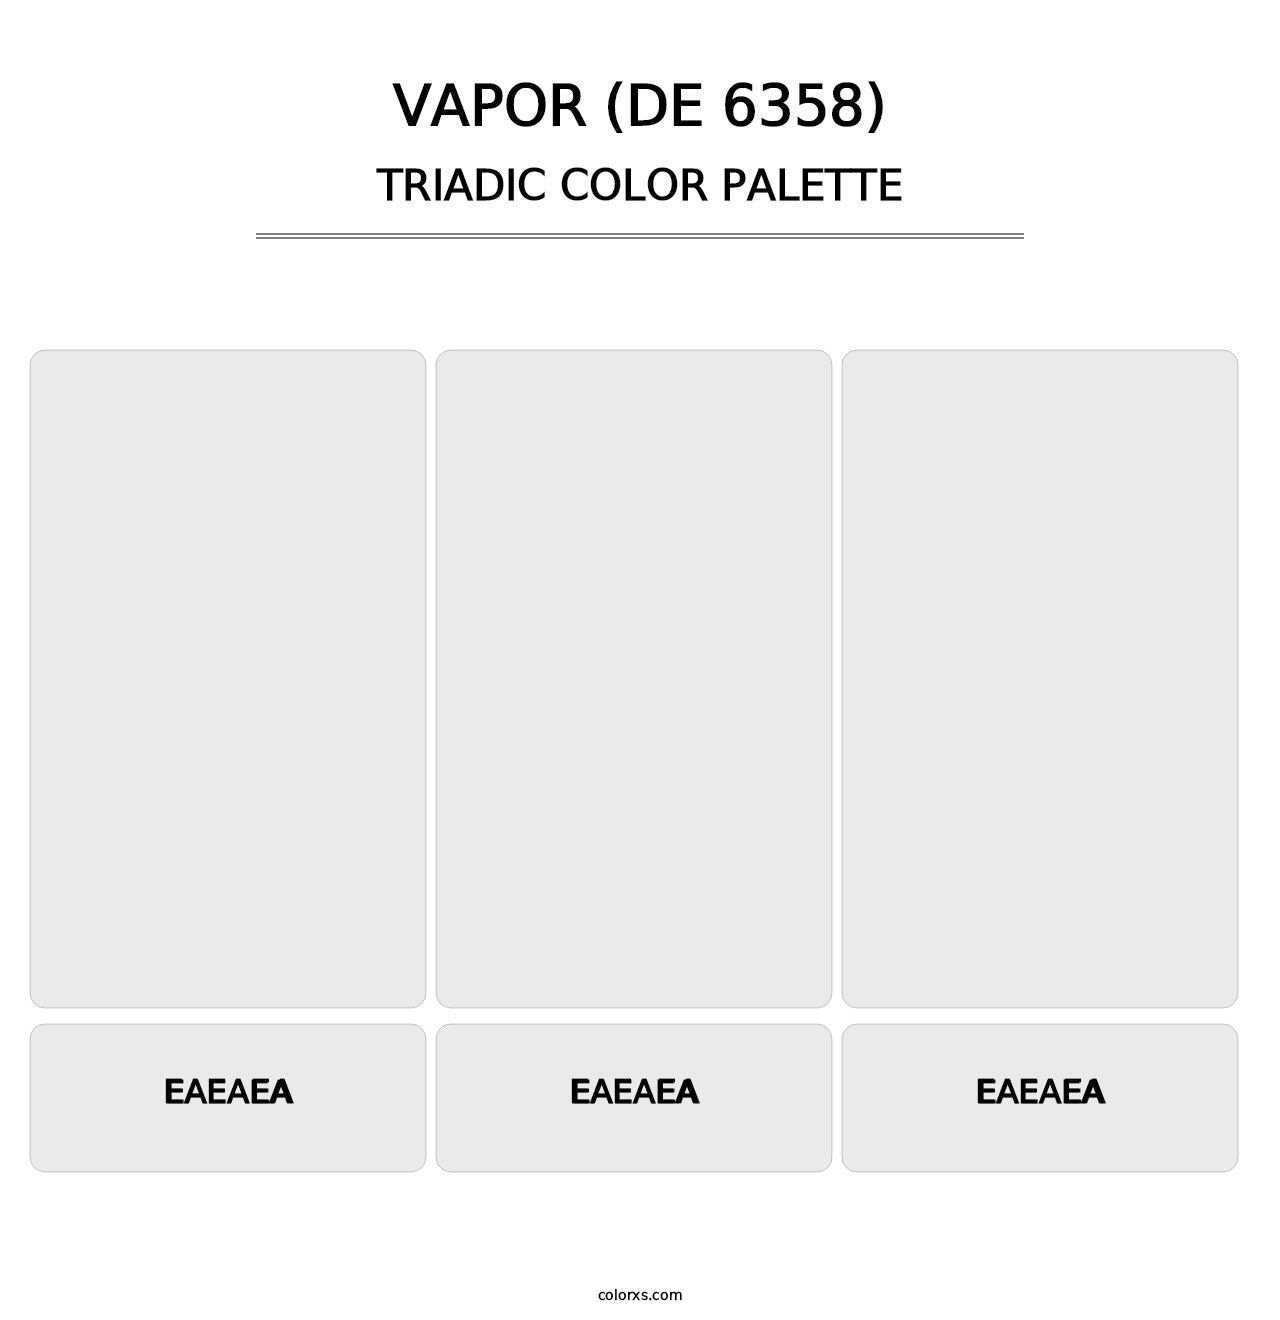 Vapor (DE 6358) - Triadic Color Palette